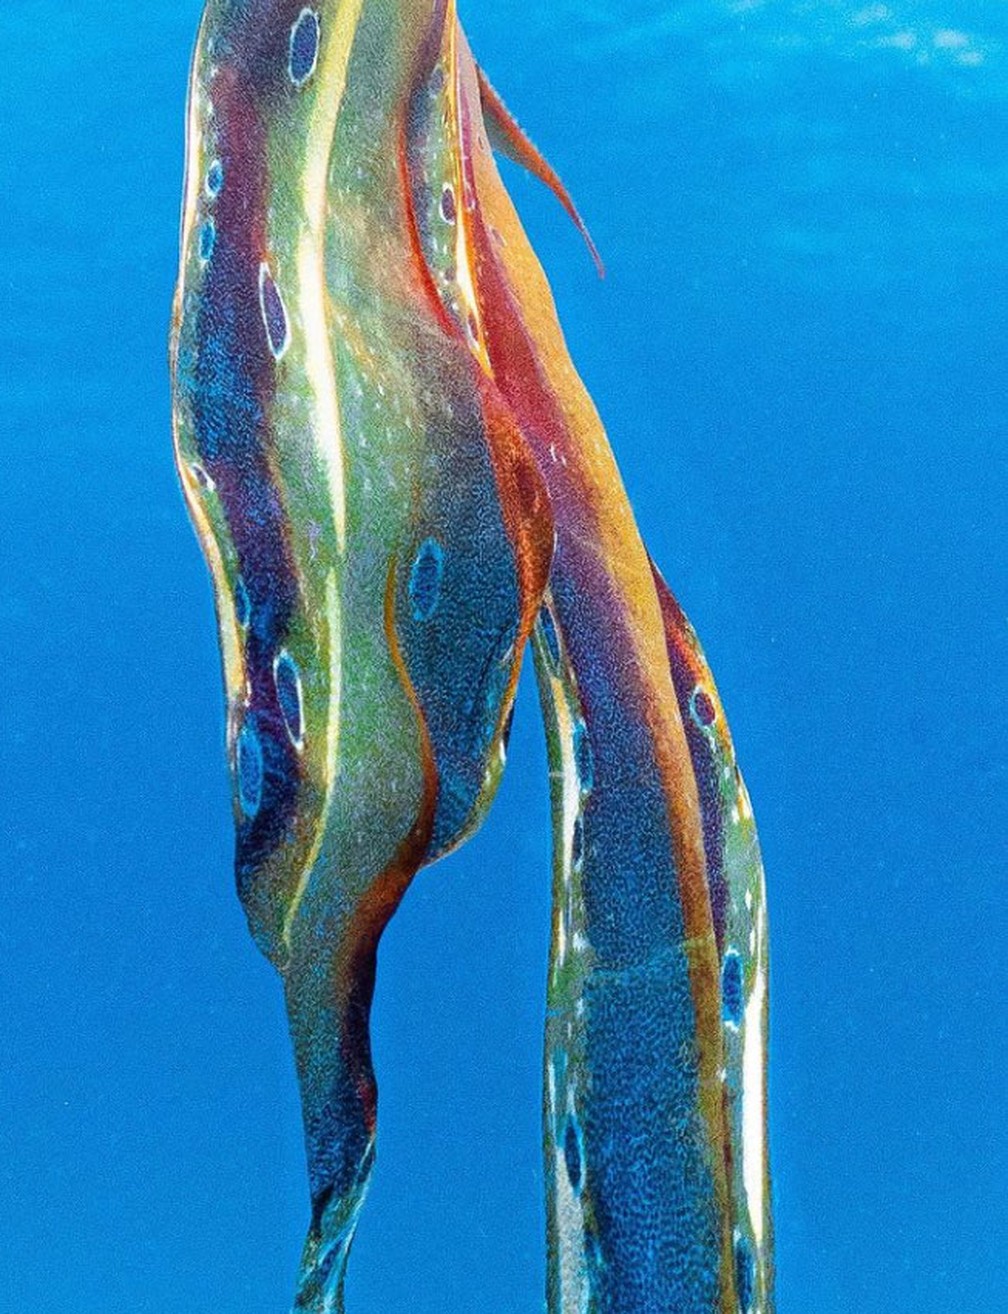 Polvo-véu avistado na Grande Barreira de Corais, na Austrália, pela bióloga marinha Jacinta Shackelton — Foto: Reprodução Instagram/Jacinta Shackelton